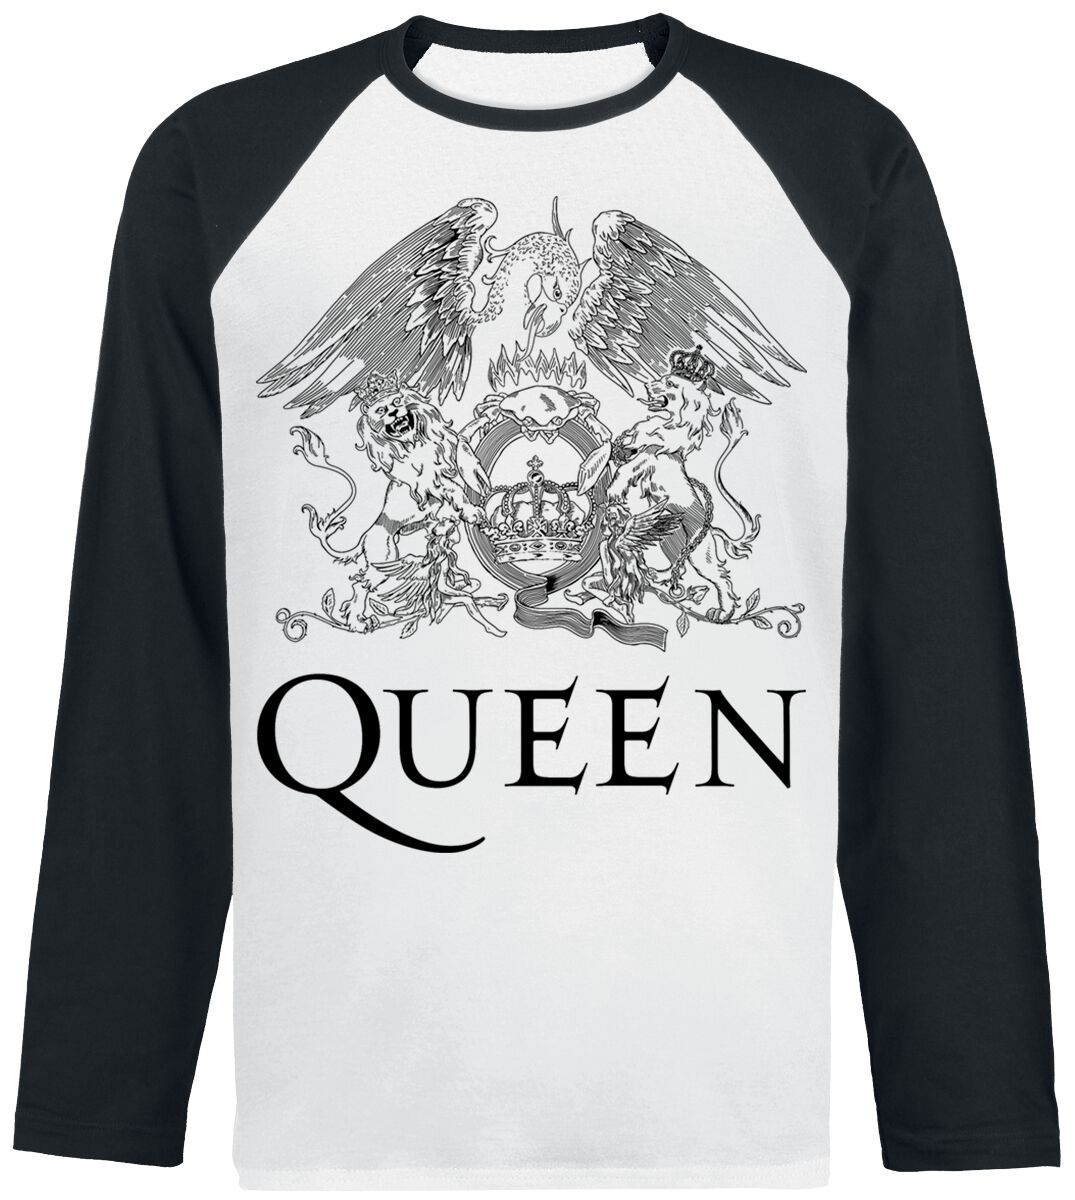 Queen Langarmshirt - Crest Vintage - S bis XXL - für Männer - Größe L - weiß/schwarz  - Lizenziertes Merchandise!